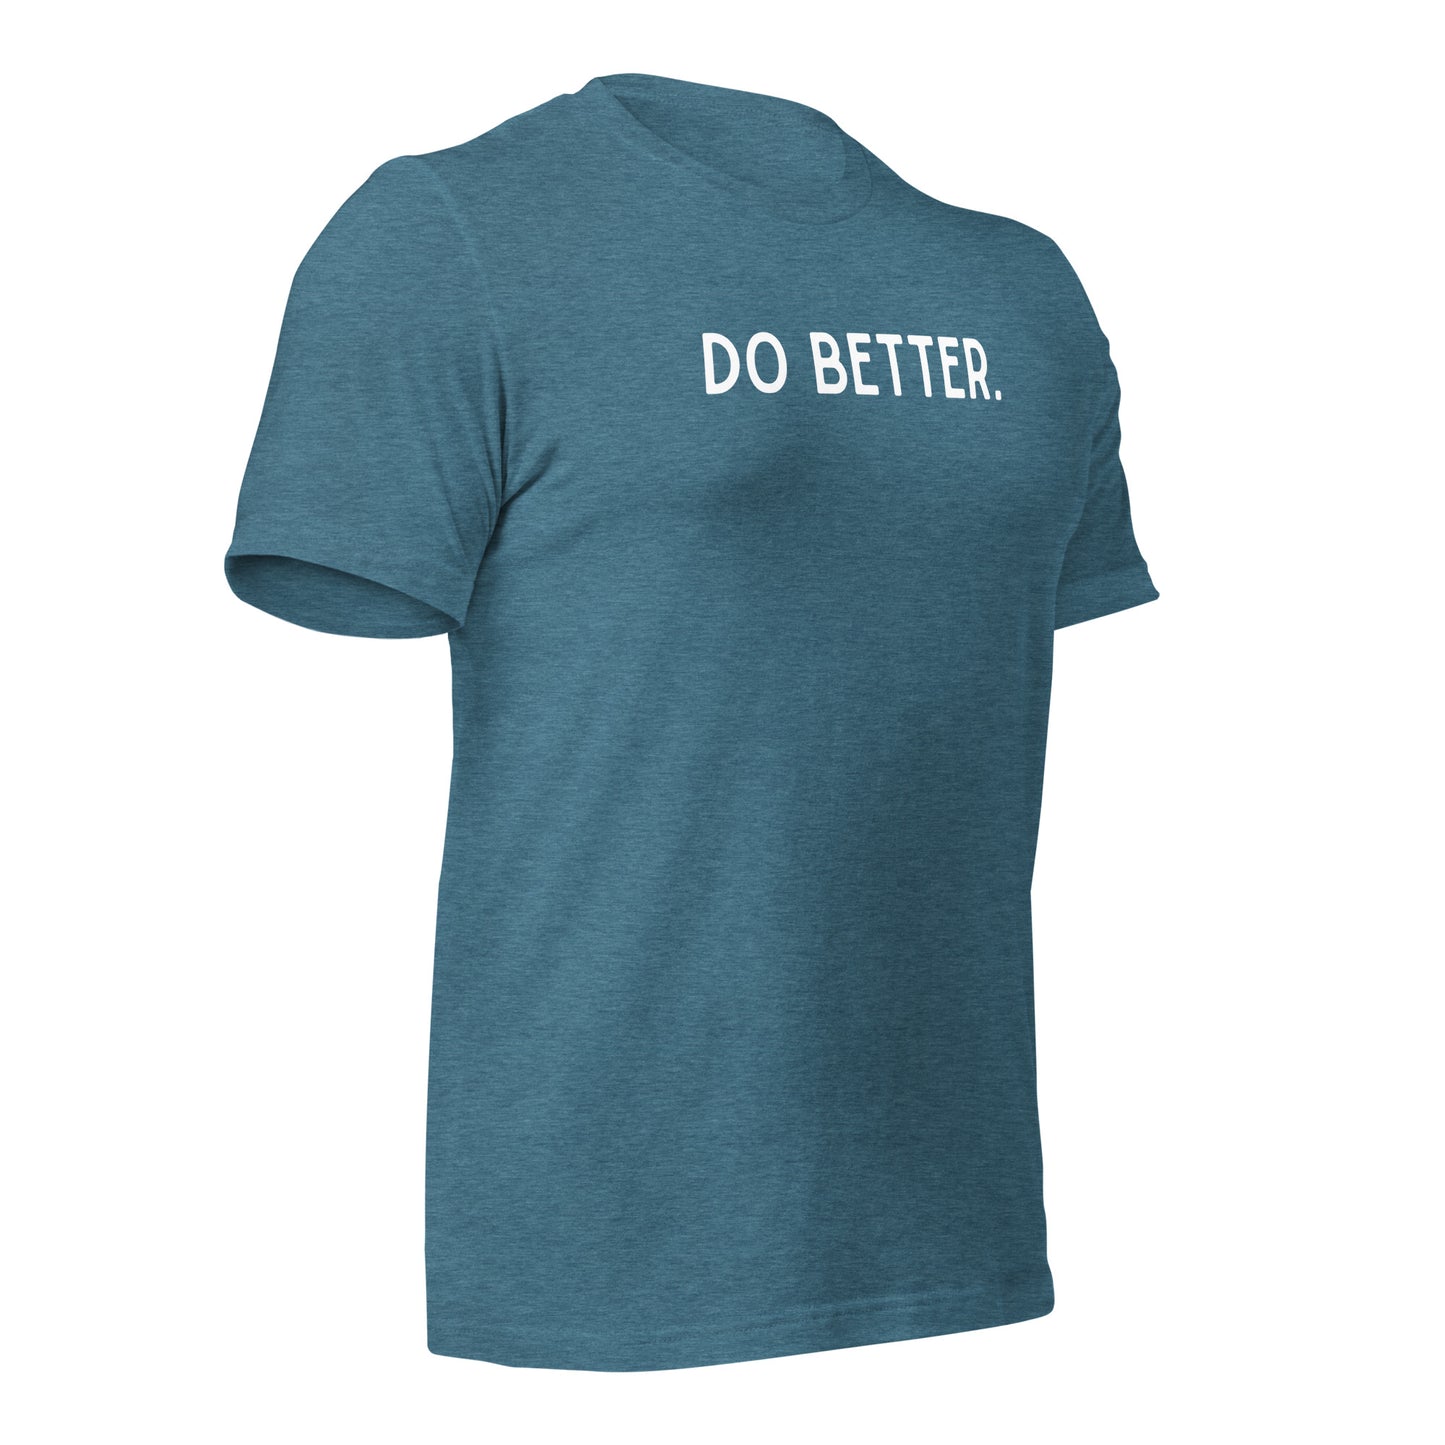 Do Better Motivational Entrepreneur T-Shirt